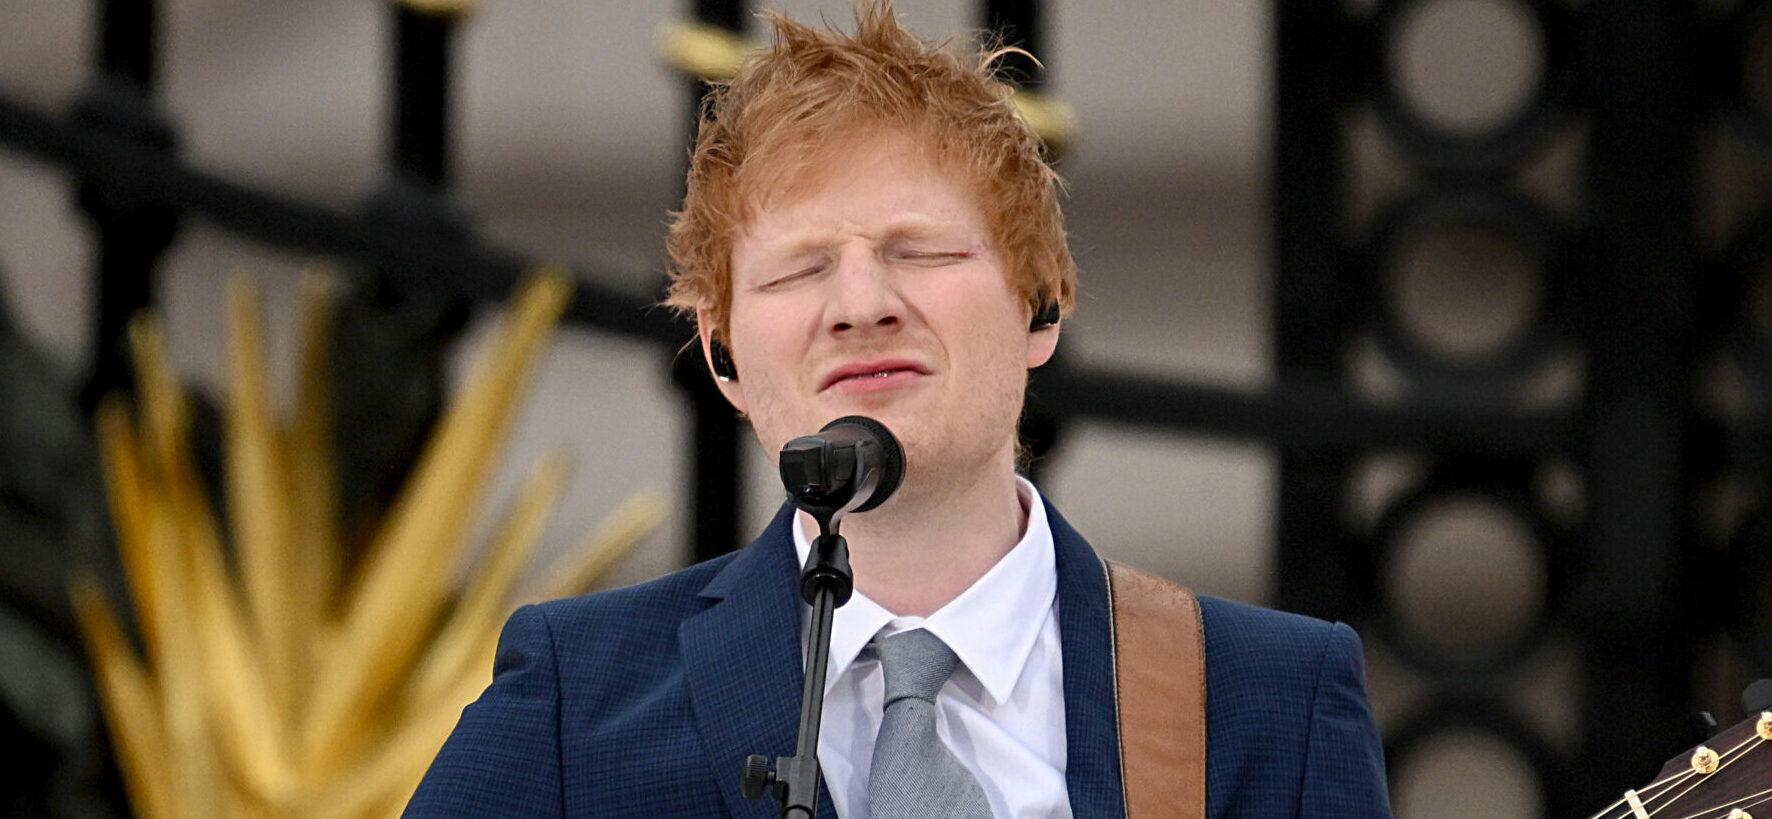 Ed Sheeran Announces “Dark” New Album, Reveals Wife’s Tumor During Pregnancy